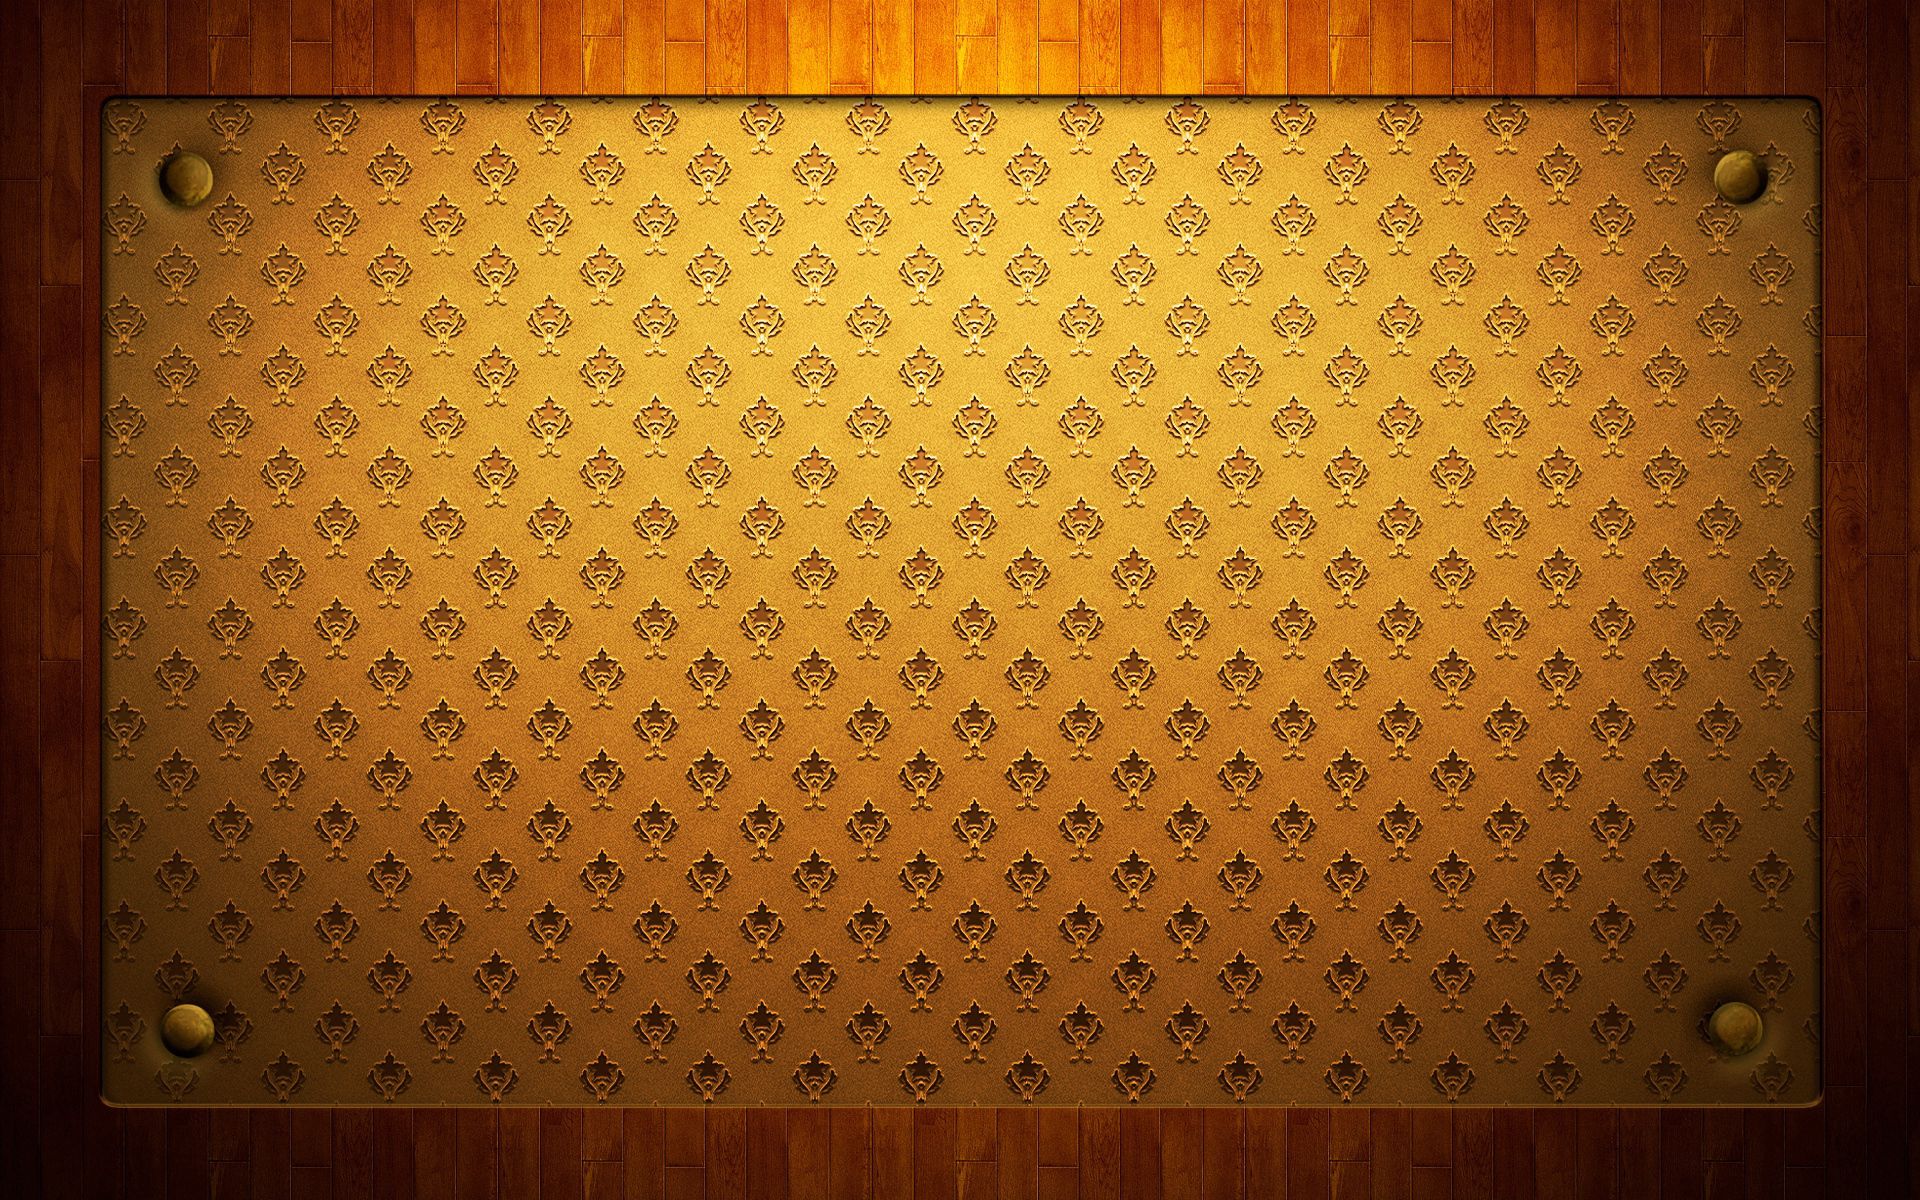 mat, texture, patterns, wood, wooden, textures, surface, buttons, rug